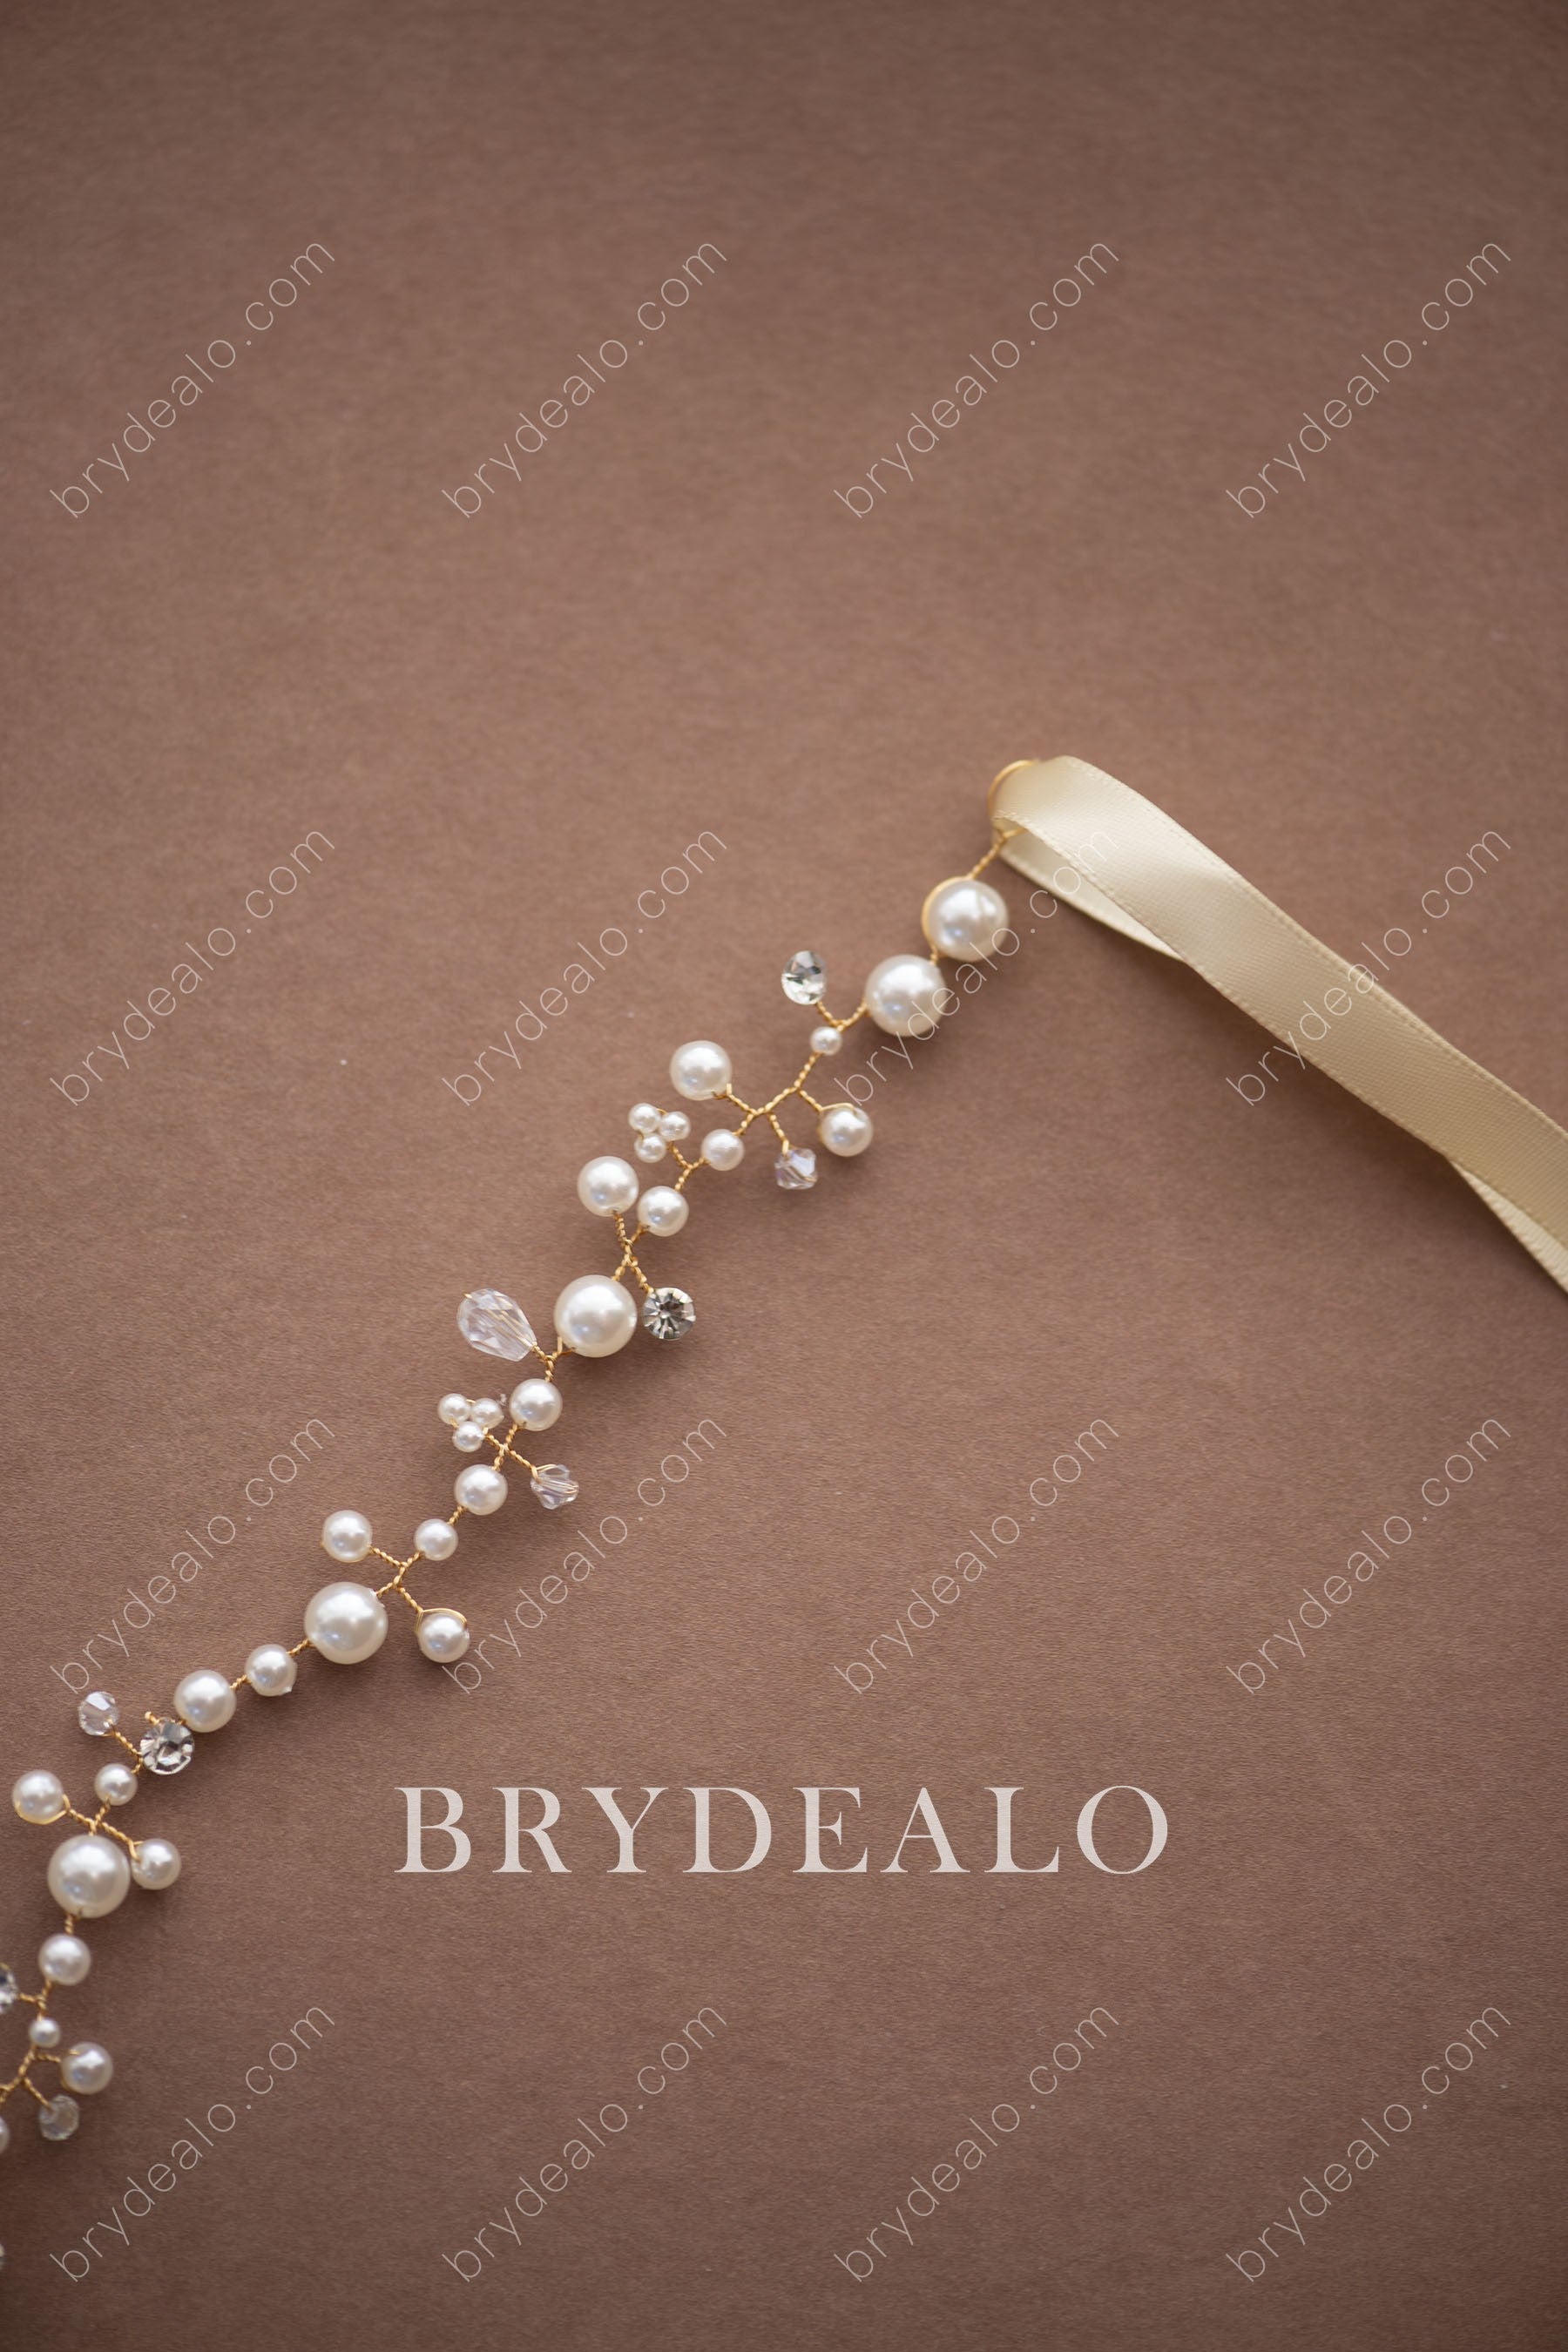 Wholesale Pearls Crystals Bridal Sash